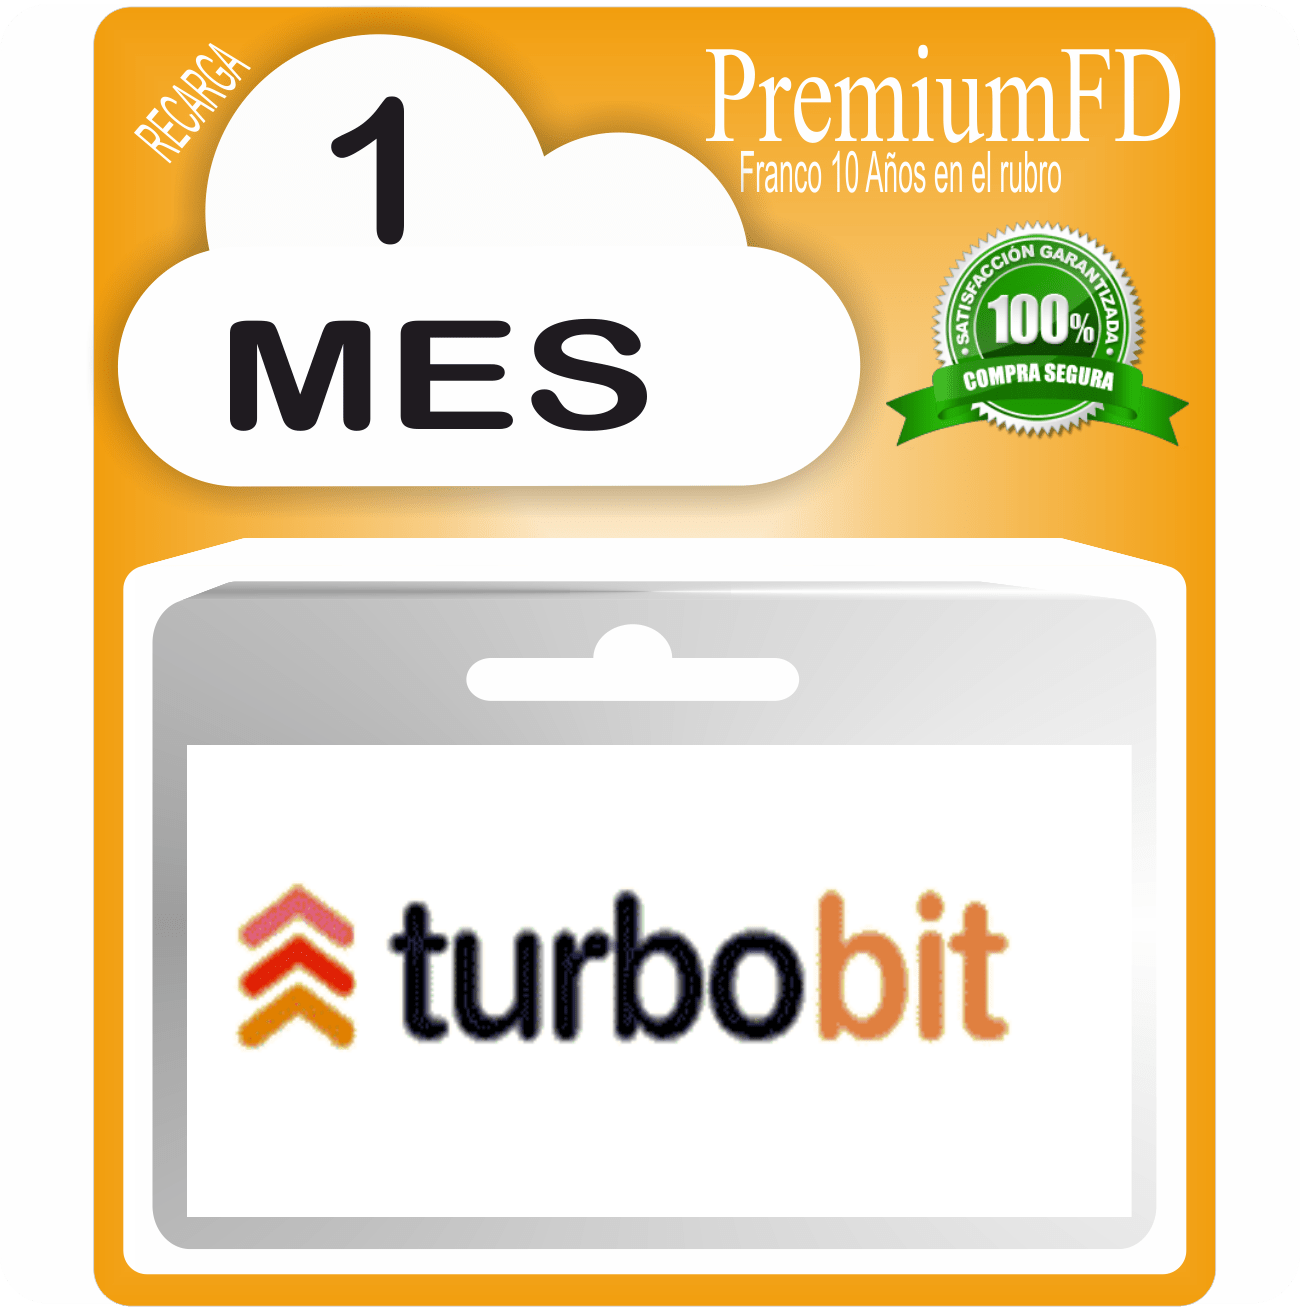 Cuentas Premium Turbobit x 30 dias